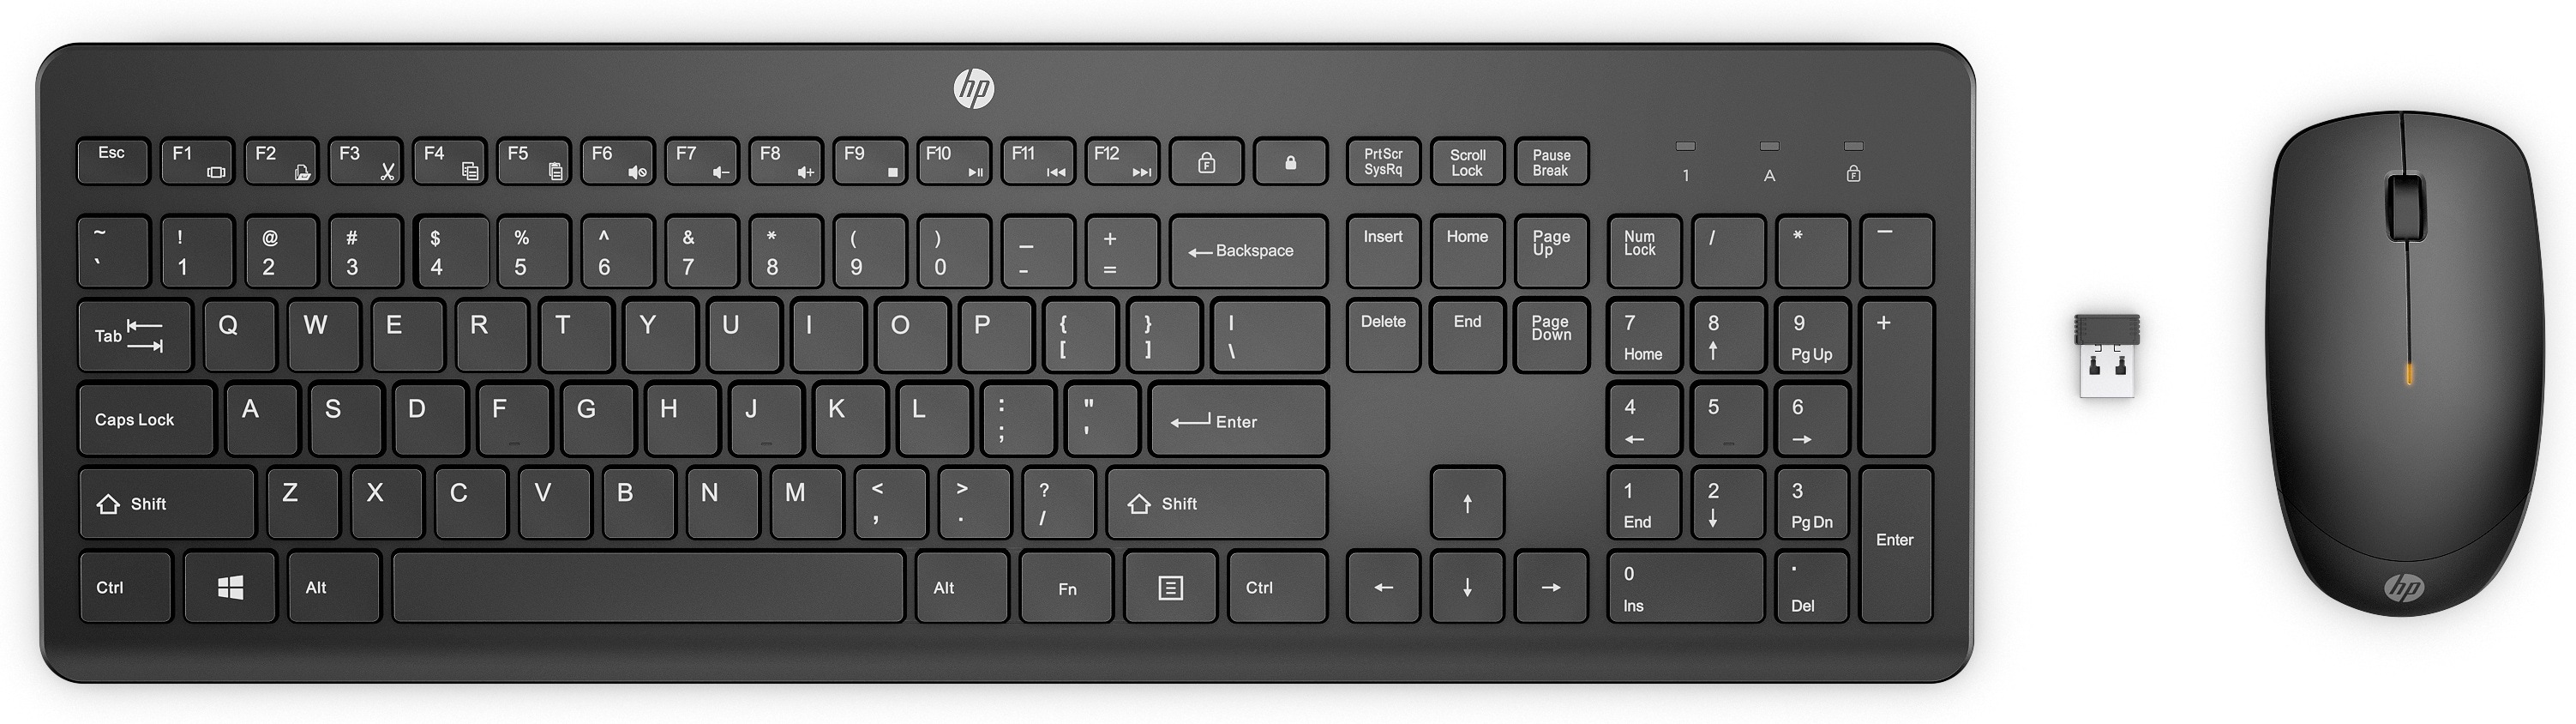 Het eens zijn met zijn nikkel HP 235 draadloze muis en toetsenbordcombo toetsenbord kopen? |  Kieskeurig.nl | helpt je kiezen